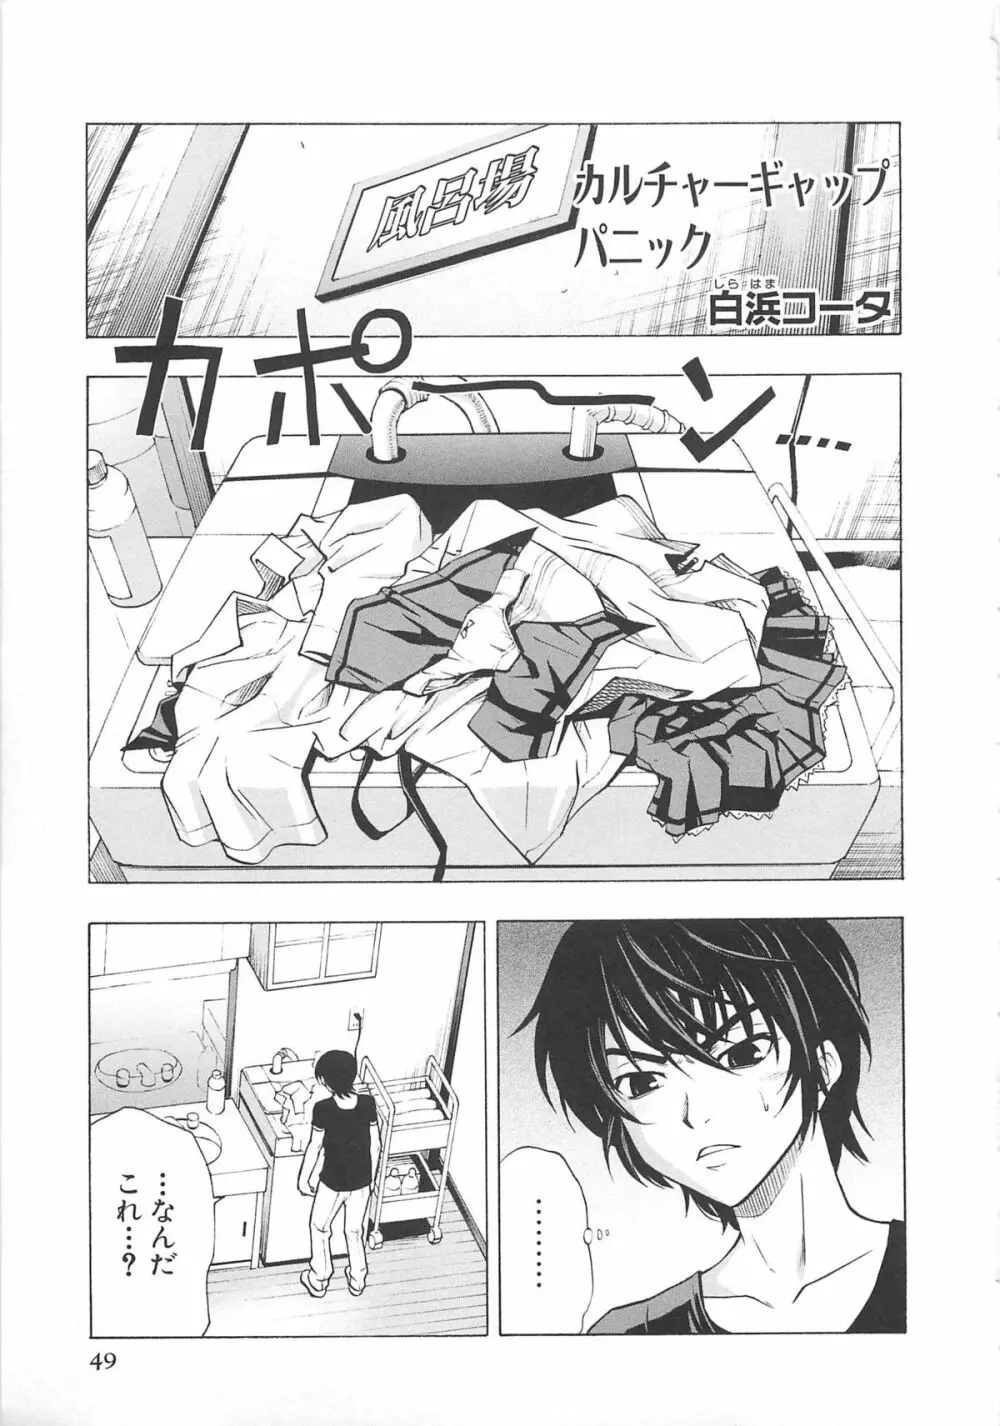 超昴閃忍ハルカコミックアンソロジー Vol3 52ページ